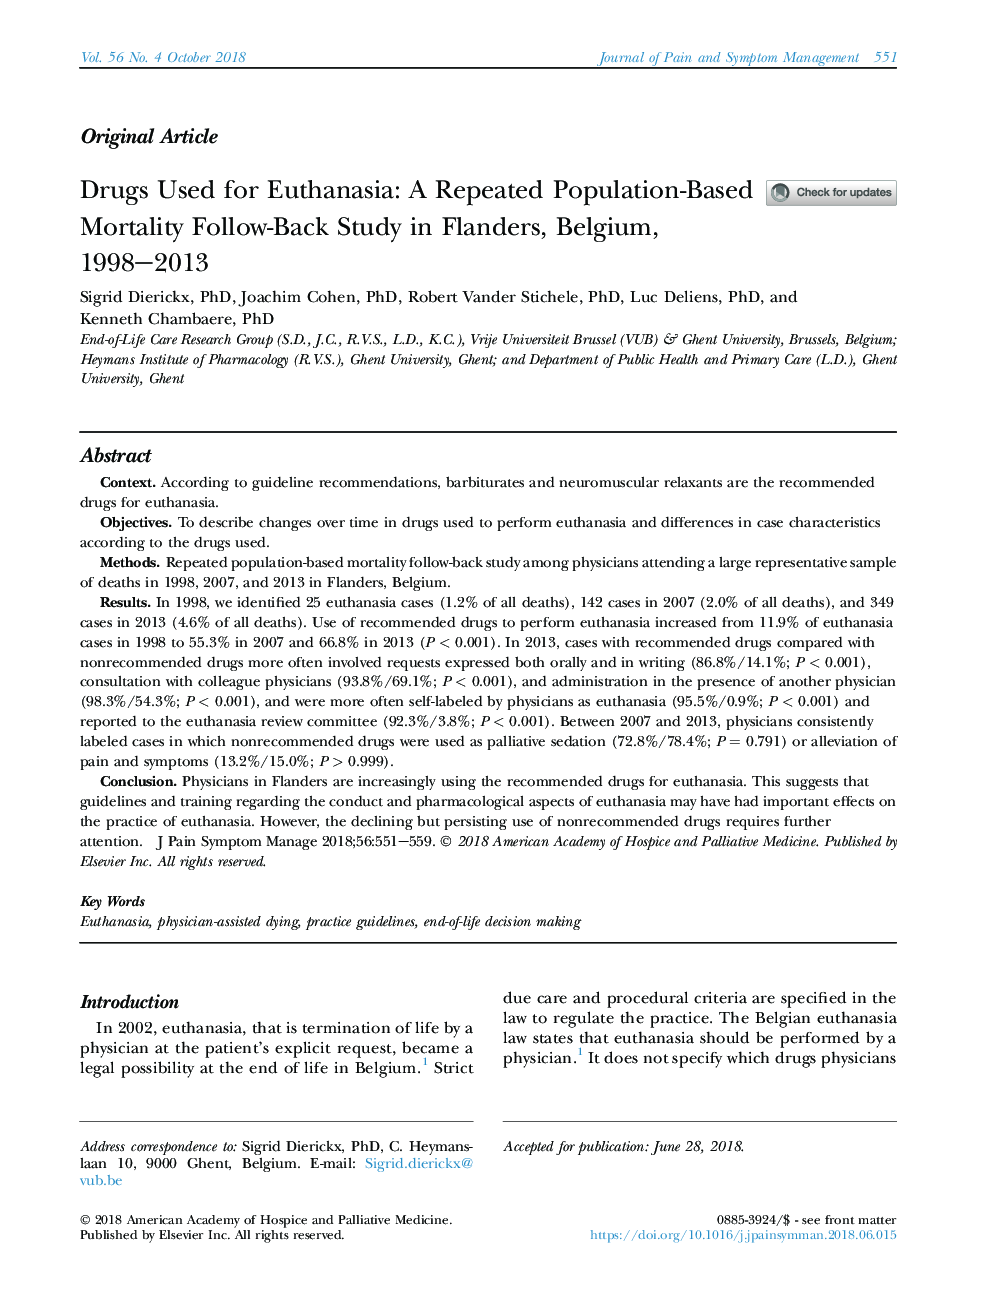 مواد مخدر مورد استفاده برای ائاتنازیا: مطالعات پیشگیری از مرگ و میر مبتنی بر جمعیت مکرر در فلاندرز، بلژیک، 1998-2013